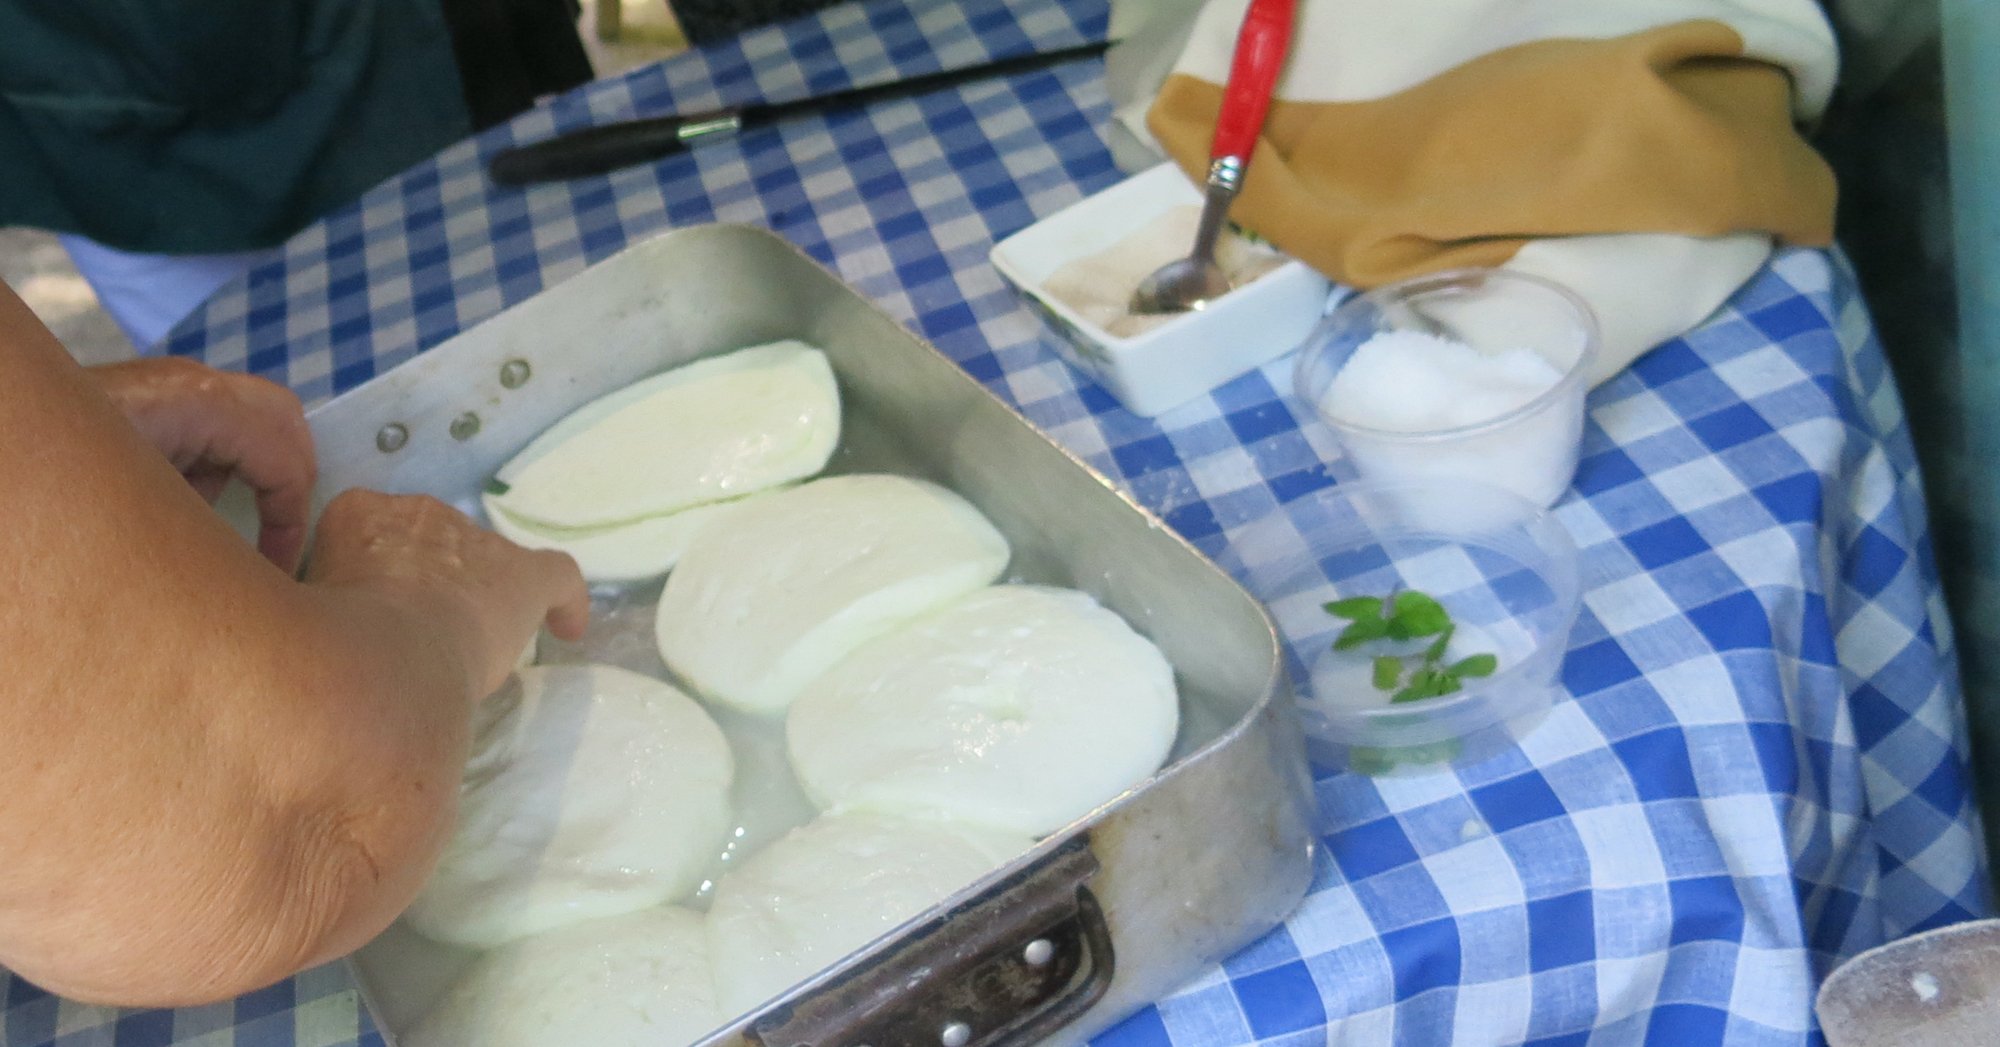 Halloumi Cheese Making Workshop & Troodos Mountain Village Tour From Ayia Napa, Larnaca, Limassol, Nicosia & Protaras_6